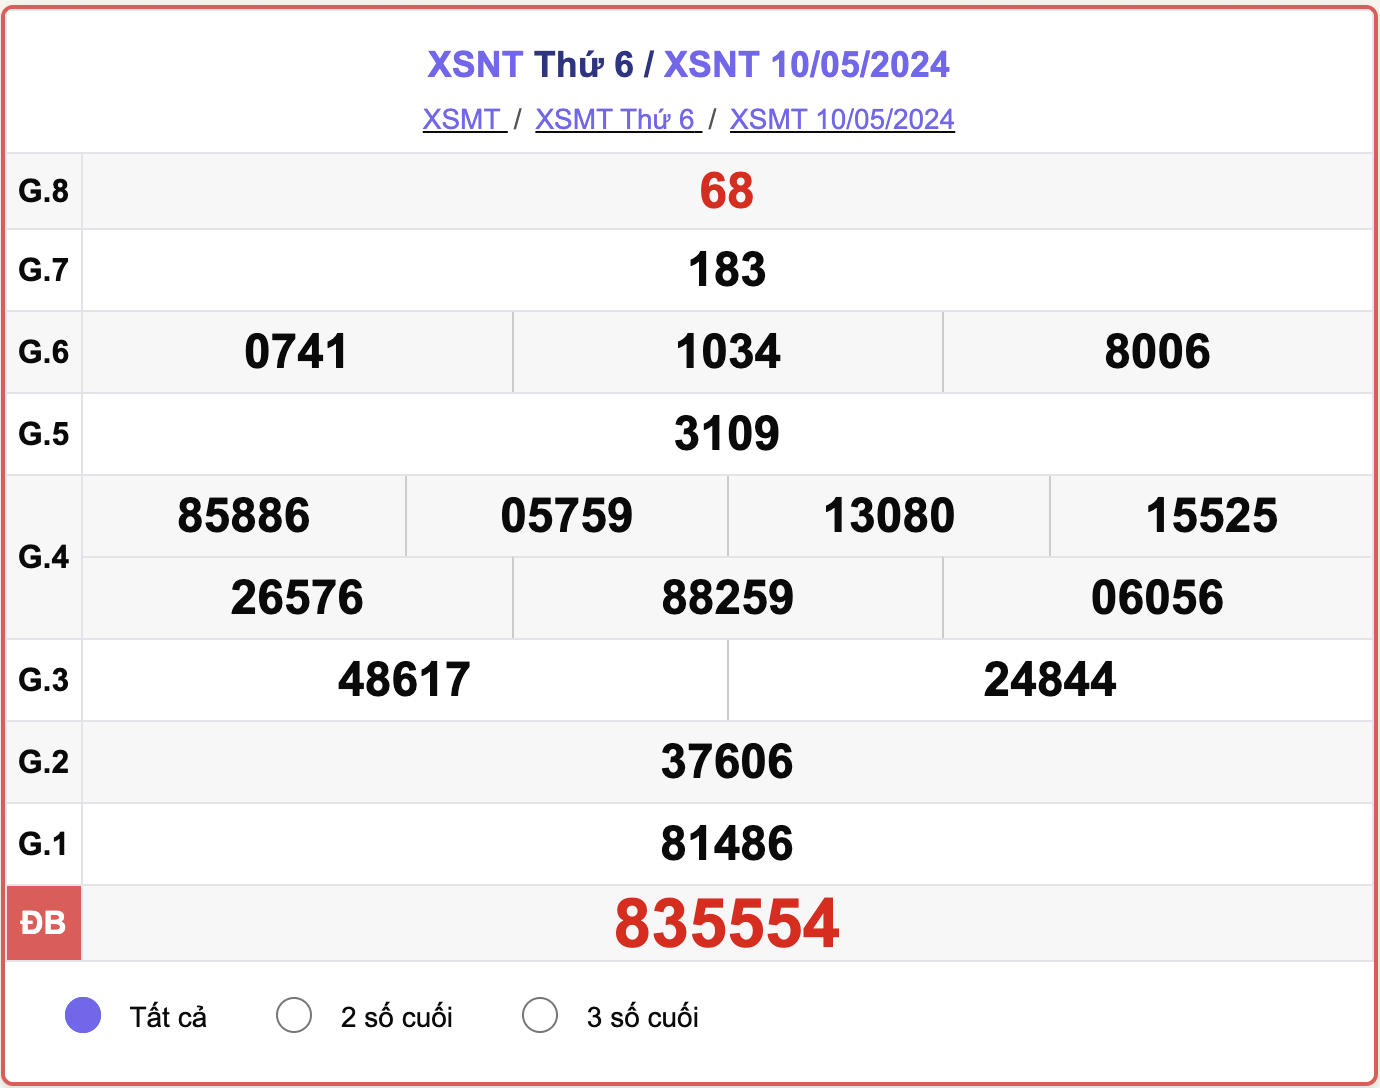 XSNT thứ Sáu, kết quả xổ số Ninh Thuận ngày 10/5/2024.